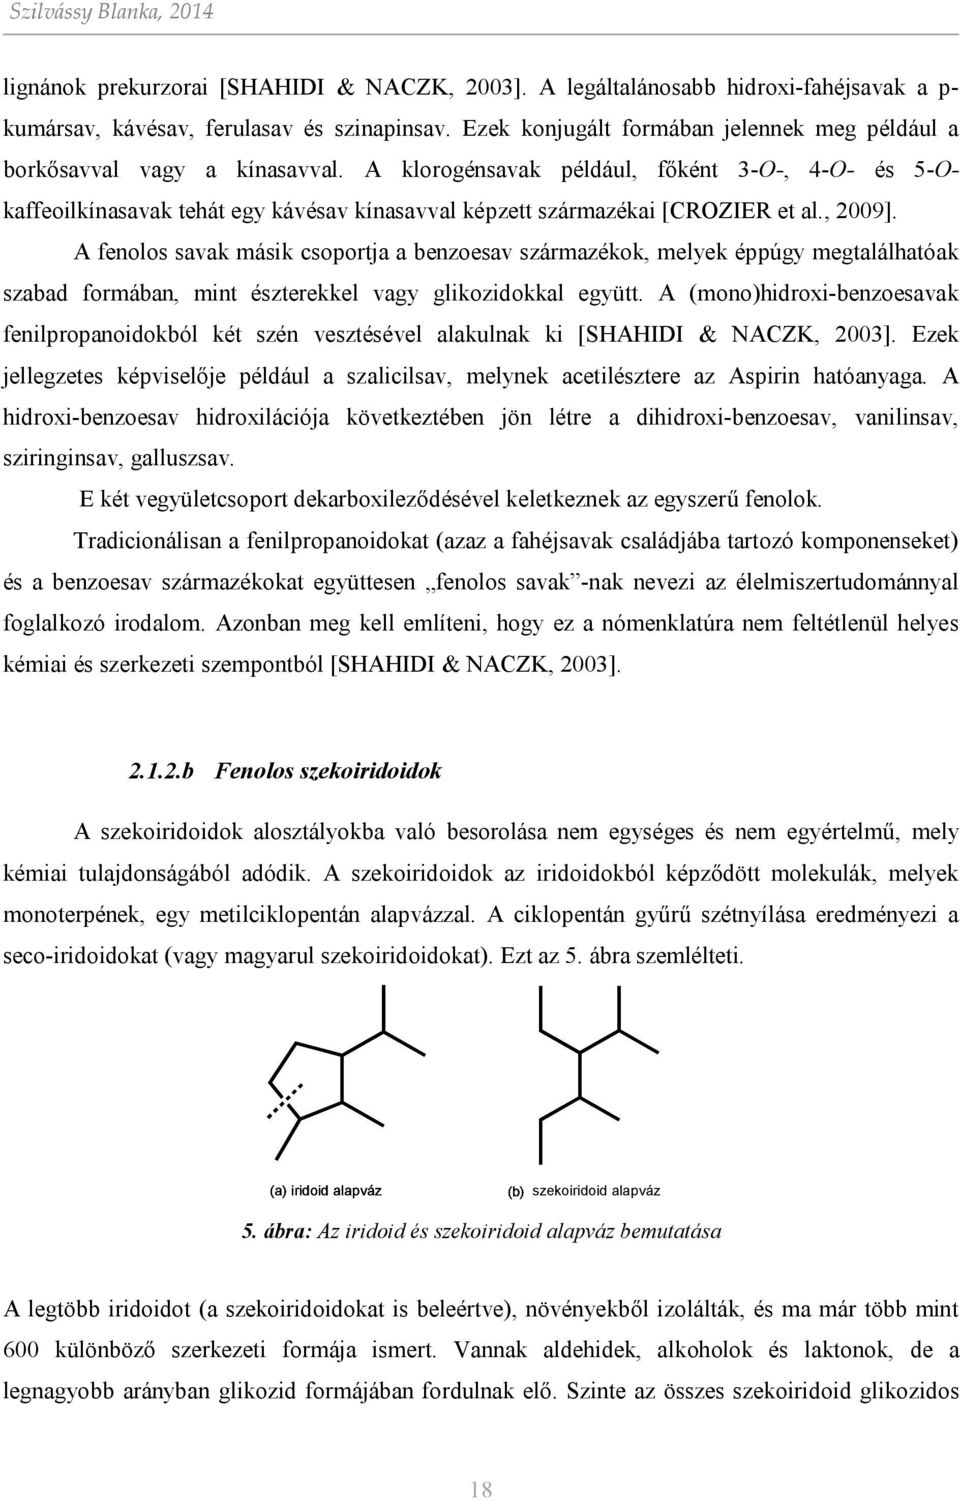 A klorogénsavak például, főként 3--, 4-- és 5-kaffeoilkínasavak tehát egy kávésav kínasavval képzett származékai [CRZIER et al., 2009].